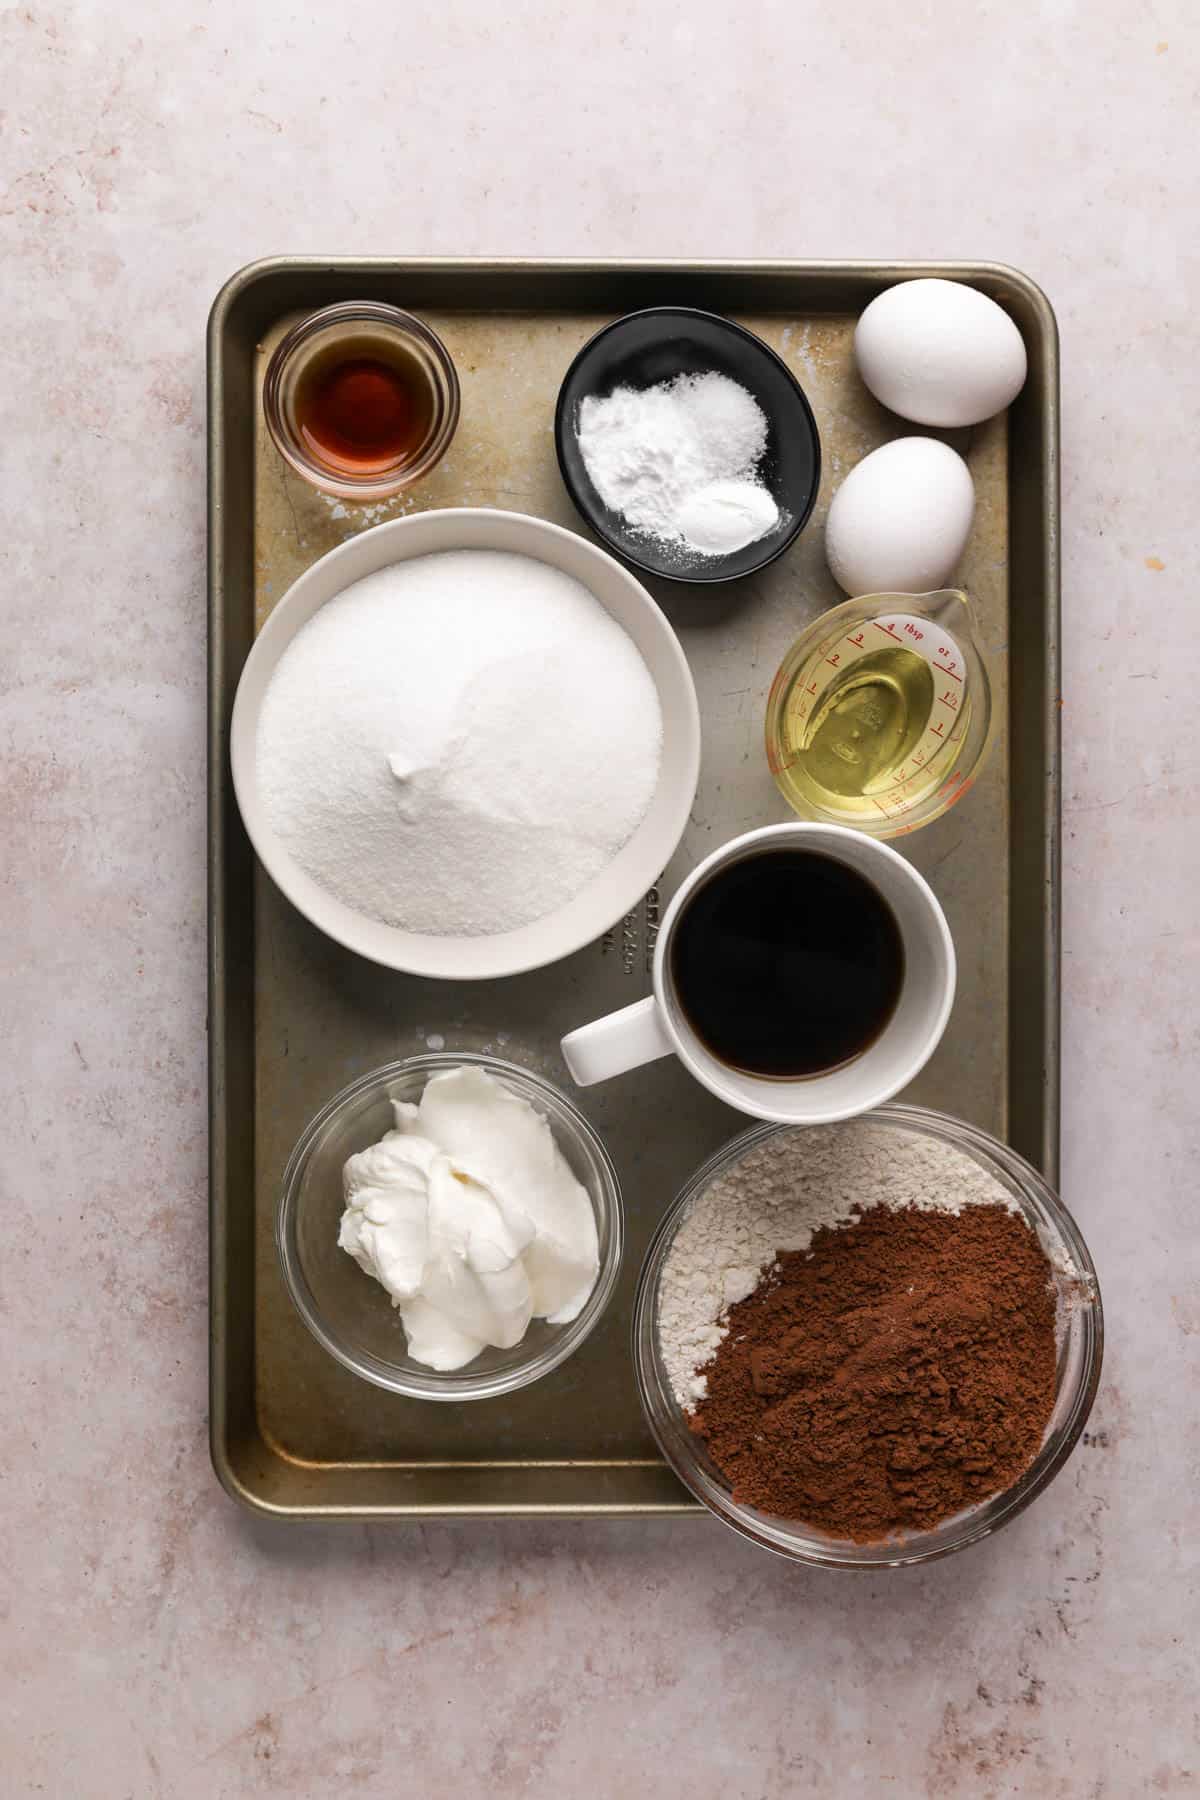 Chocolate fudge cake ingredients in bowls on a baking sheet.